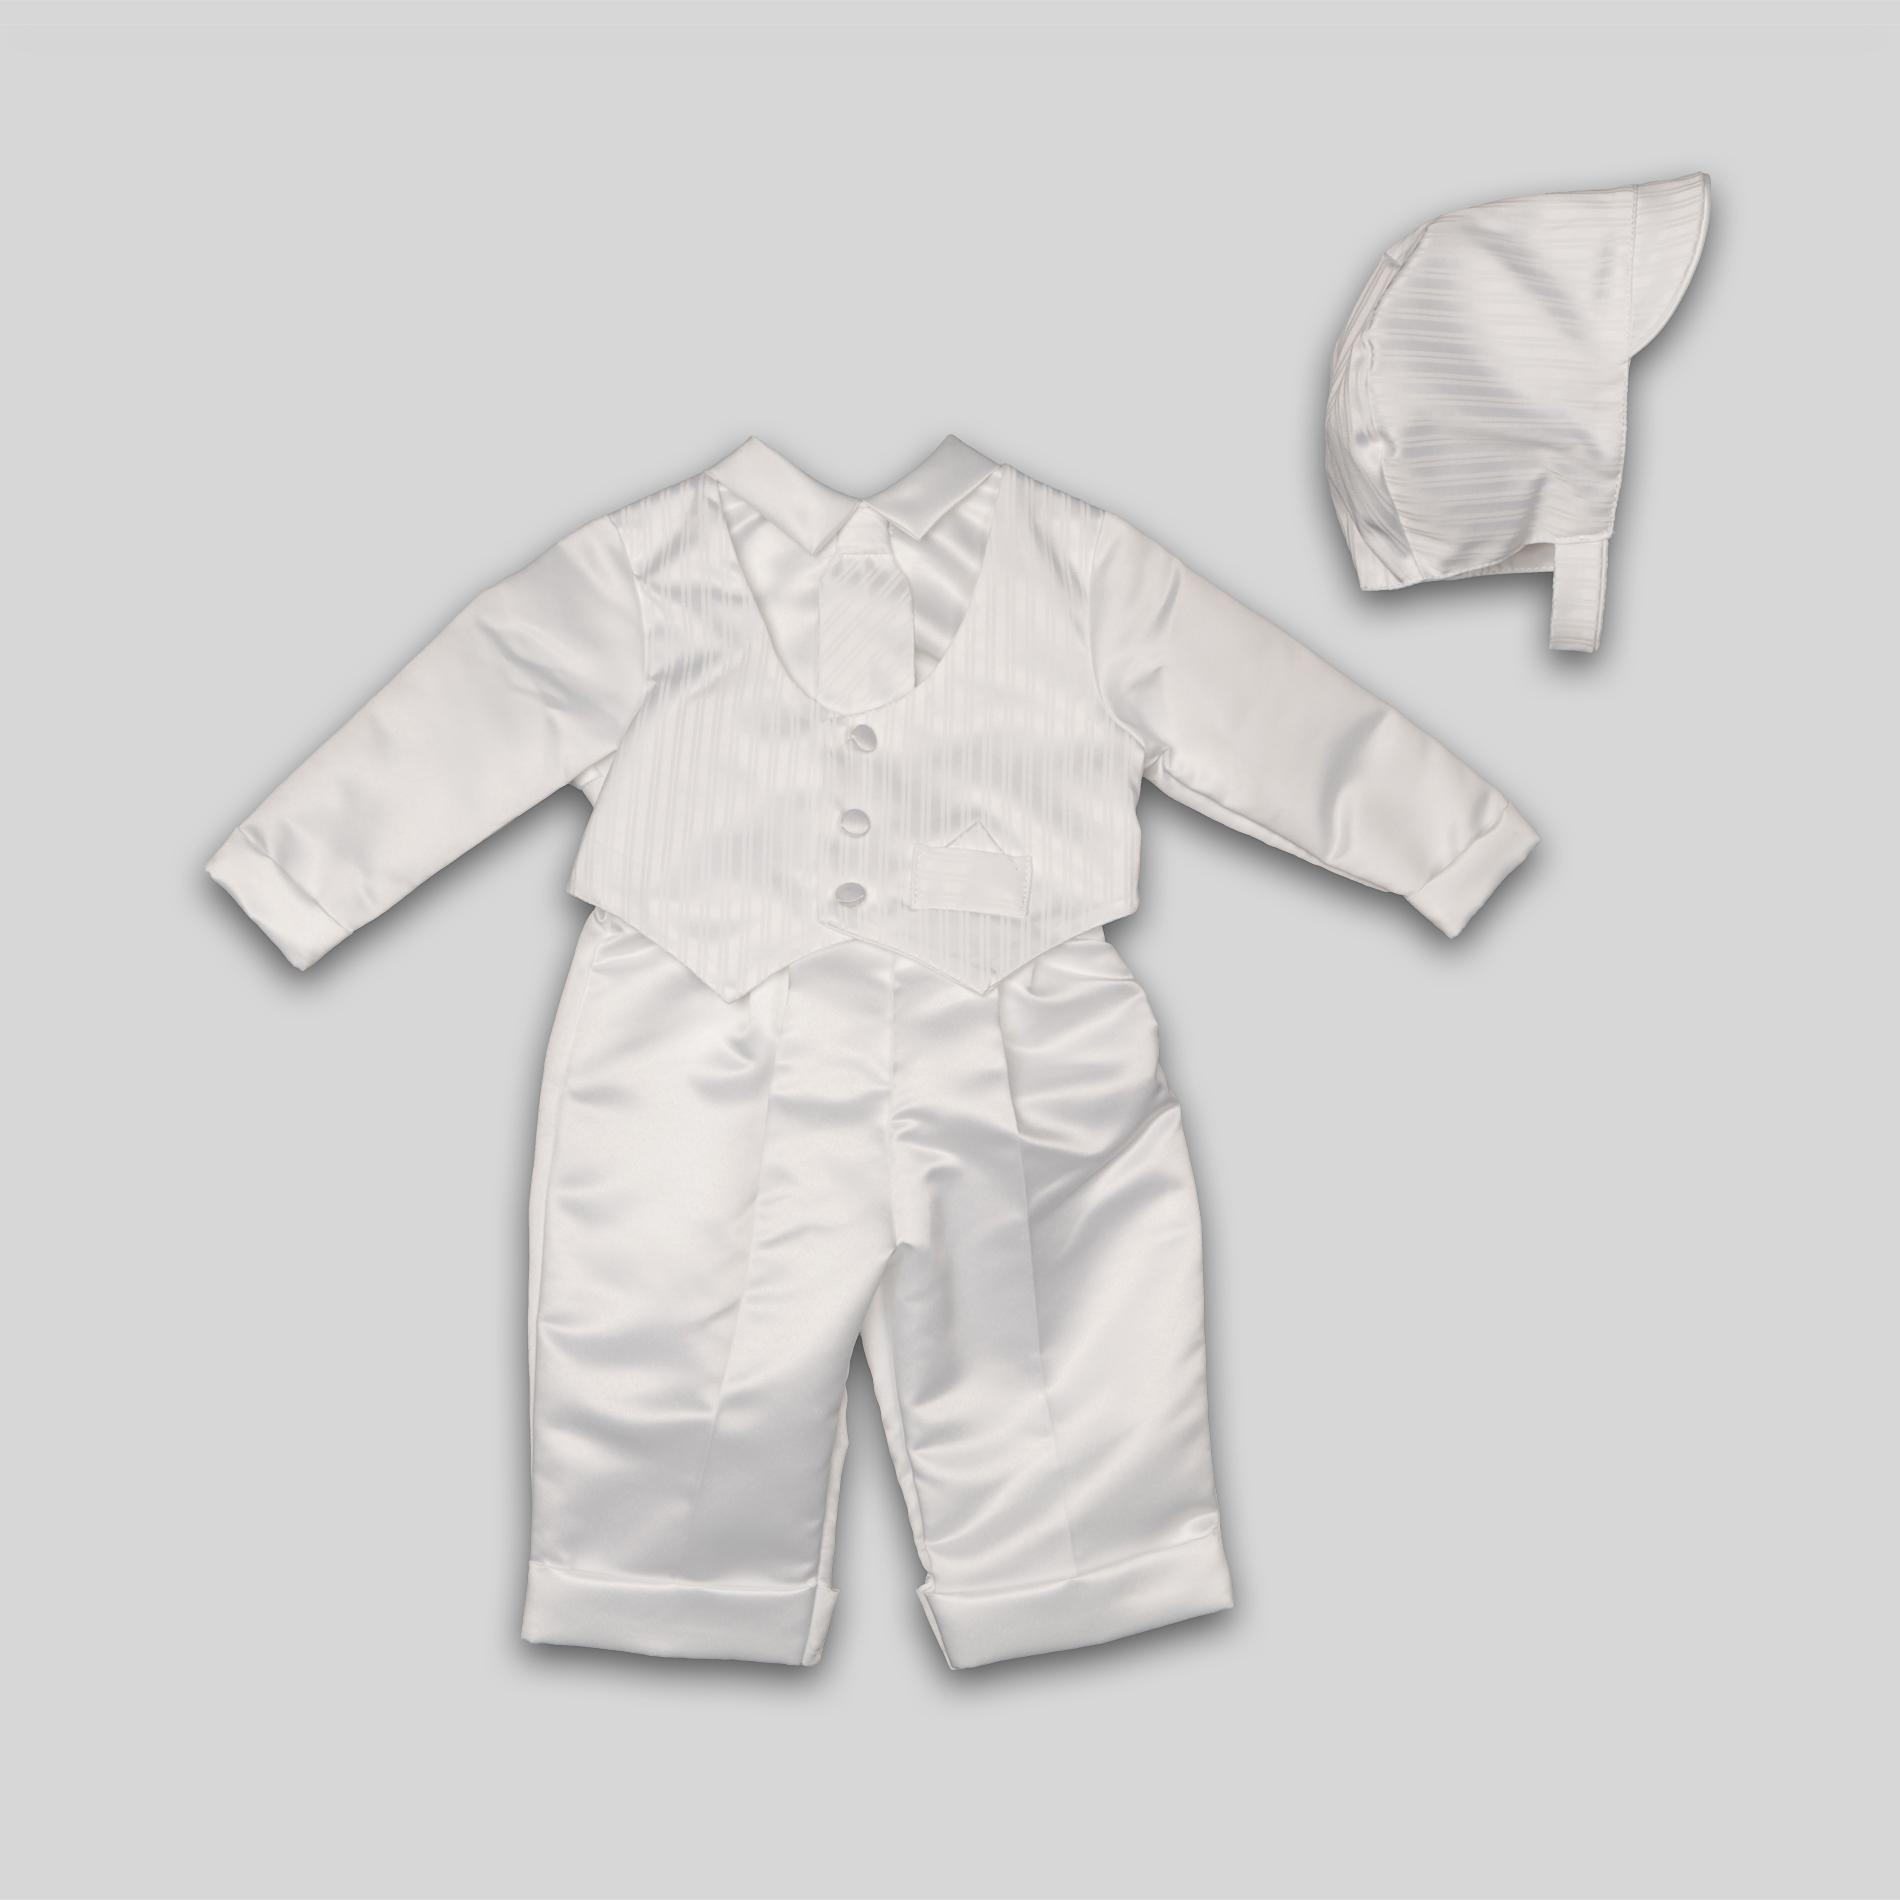 MaDonna Infant Boy's Christening Suit & Bonnet